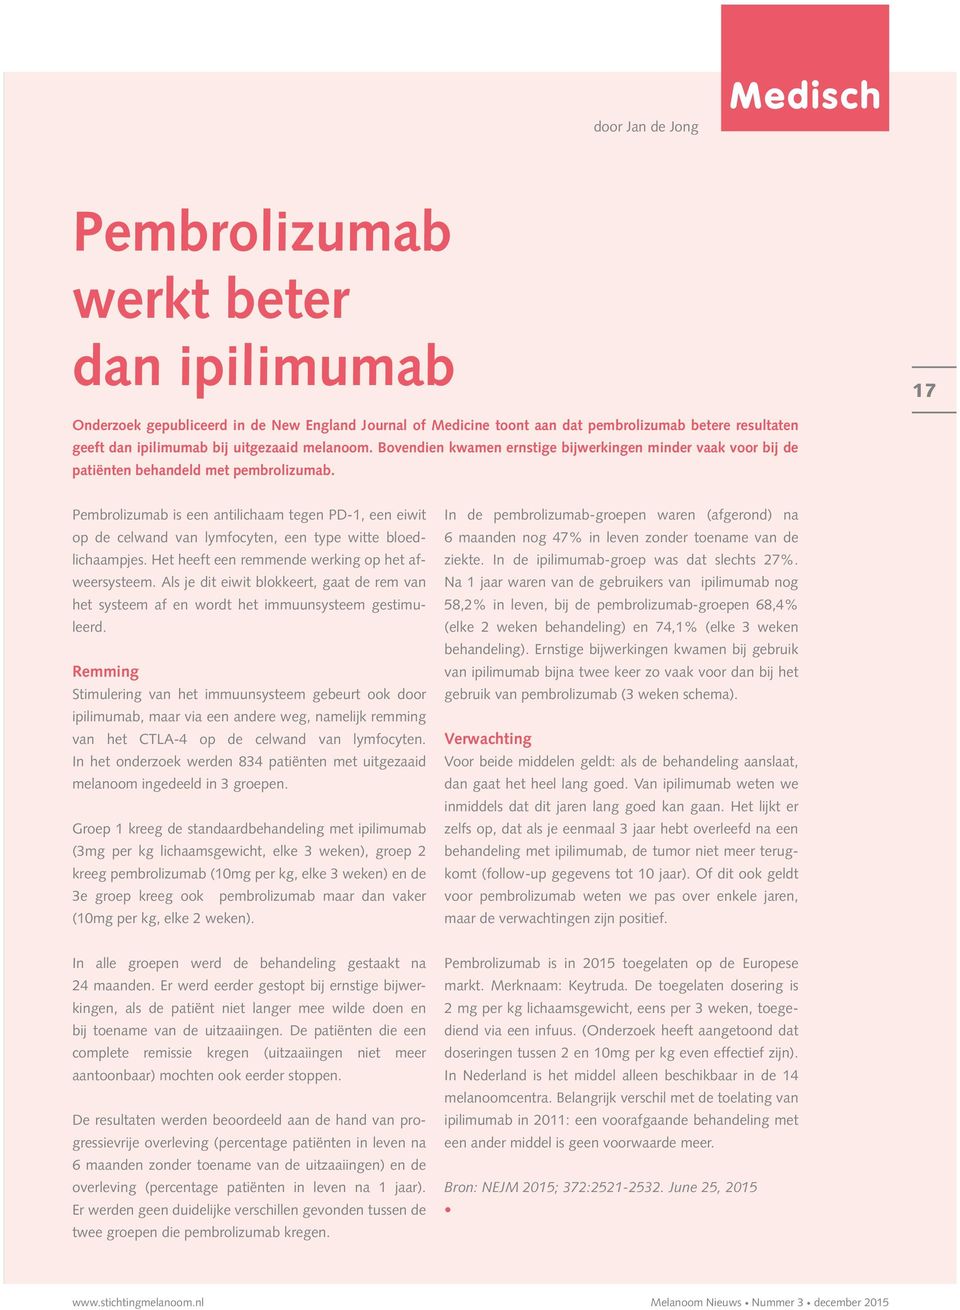 Pembrolizumab is een antilichaam tegen PD-1, een eiwit op de celwand van lymfocyten, een type witte bloedlichaampjes. Het heeft een remmende werking op het afweersysteem.